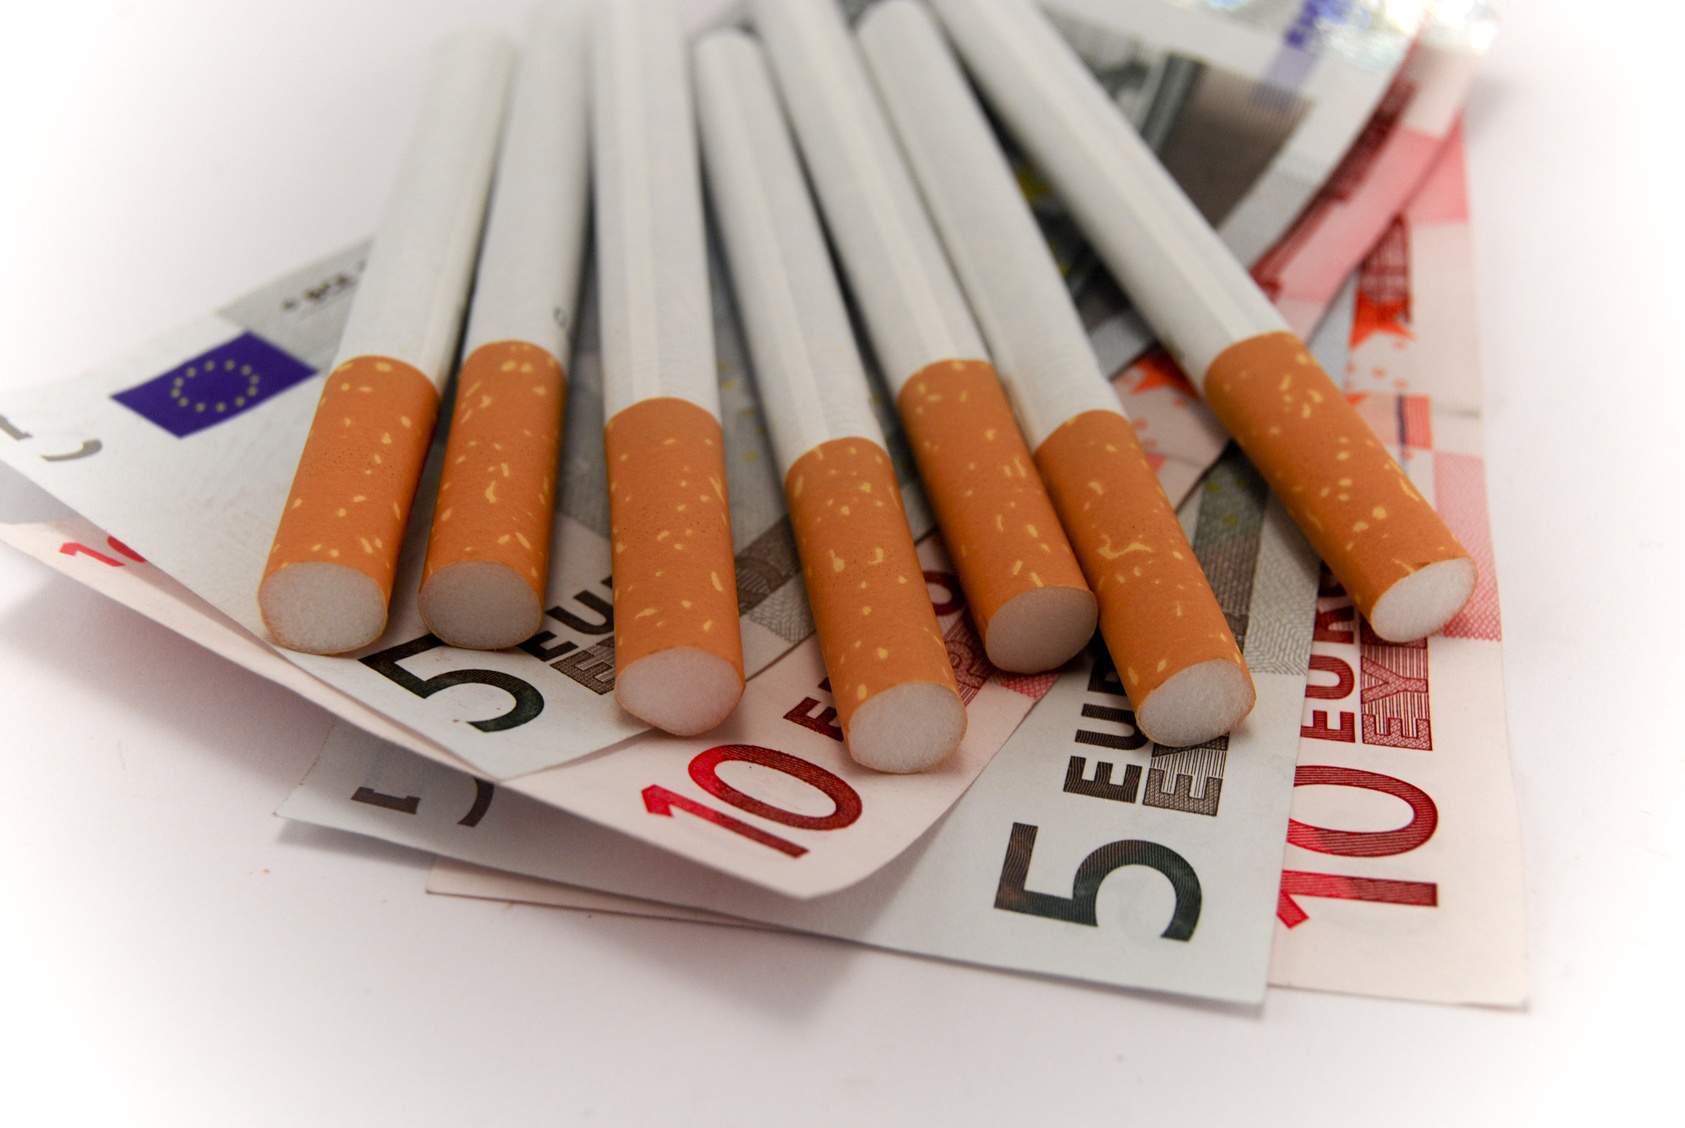 ΚΥΠΡΟΣ: Αυξήθηκαν οι τιμές σε τσιγάρα και καπνό – Πιάστηκαν στον ύπνο οι καταναλωτές